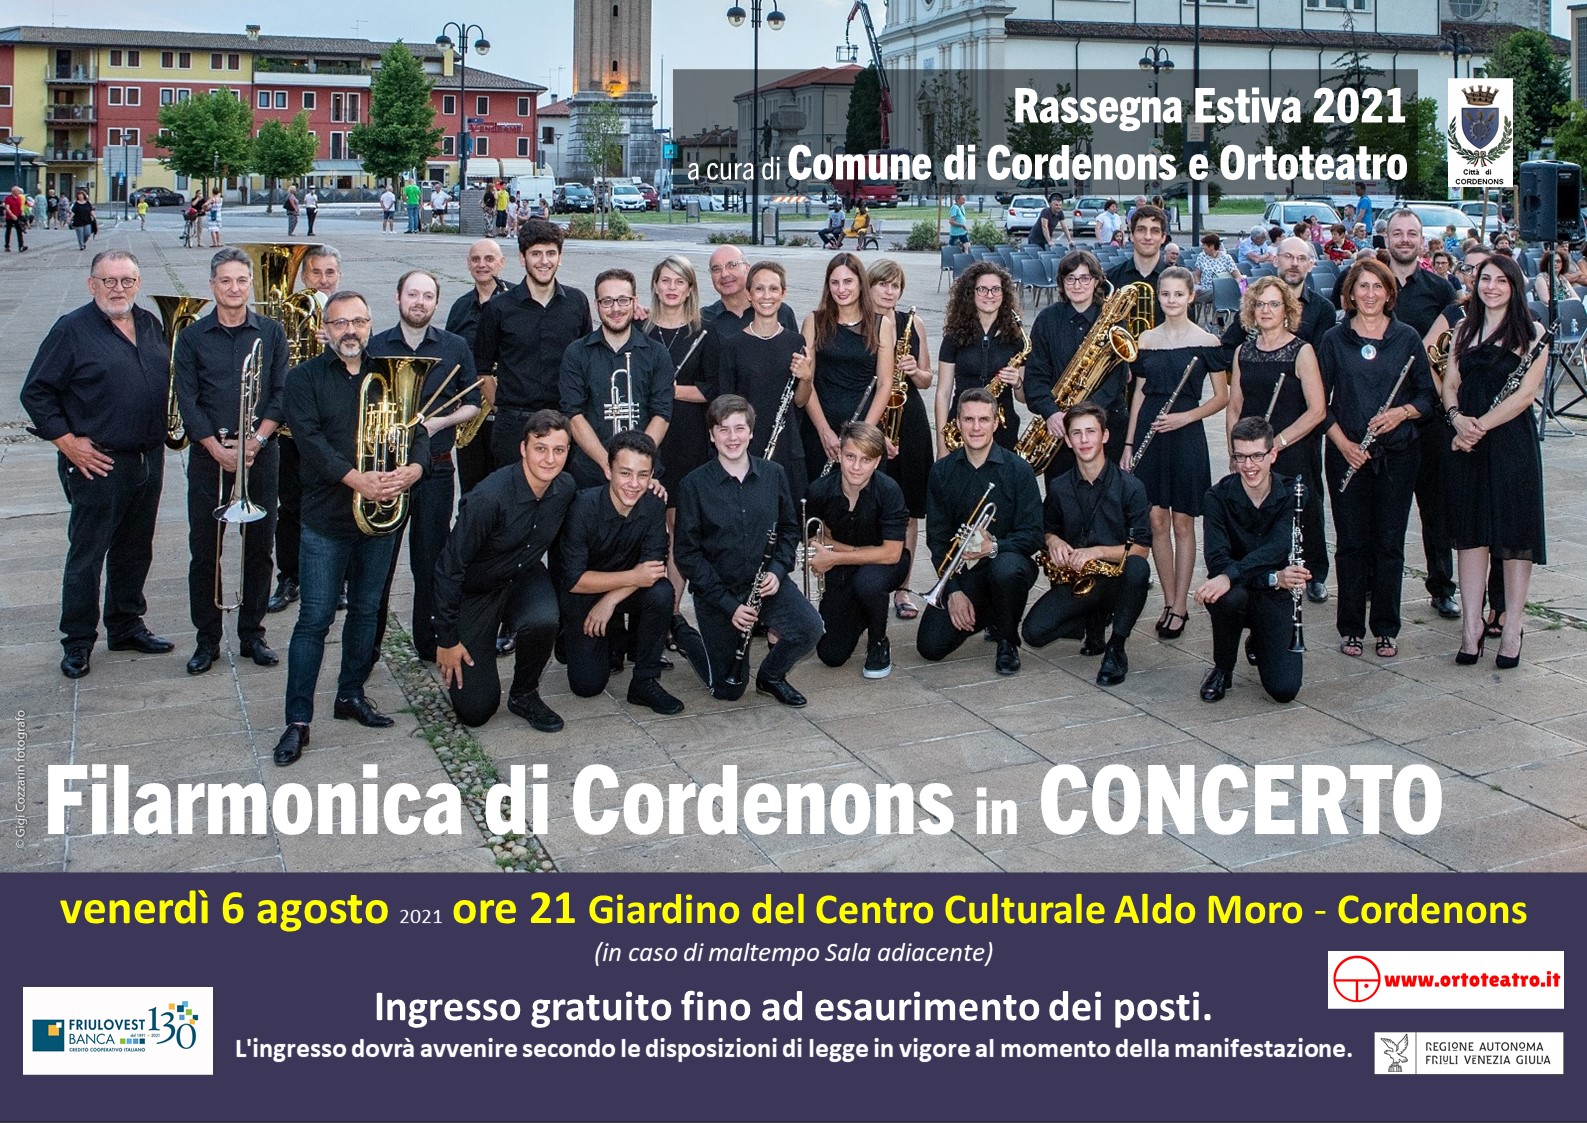 Filarmonica di Cordenons in CONCERTO - EventiFVG.it